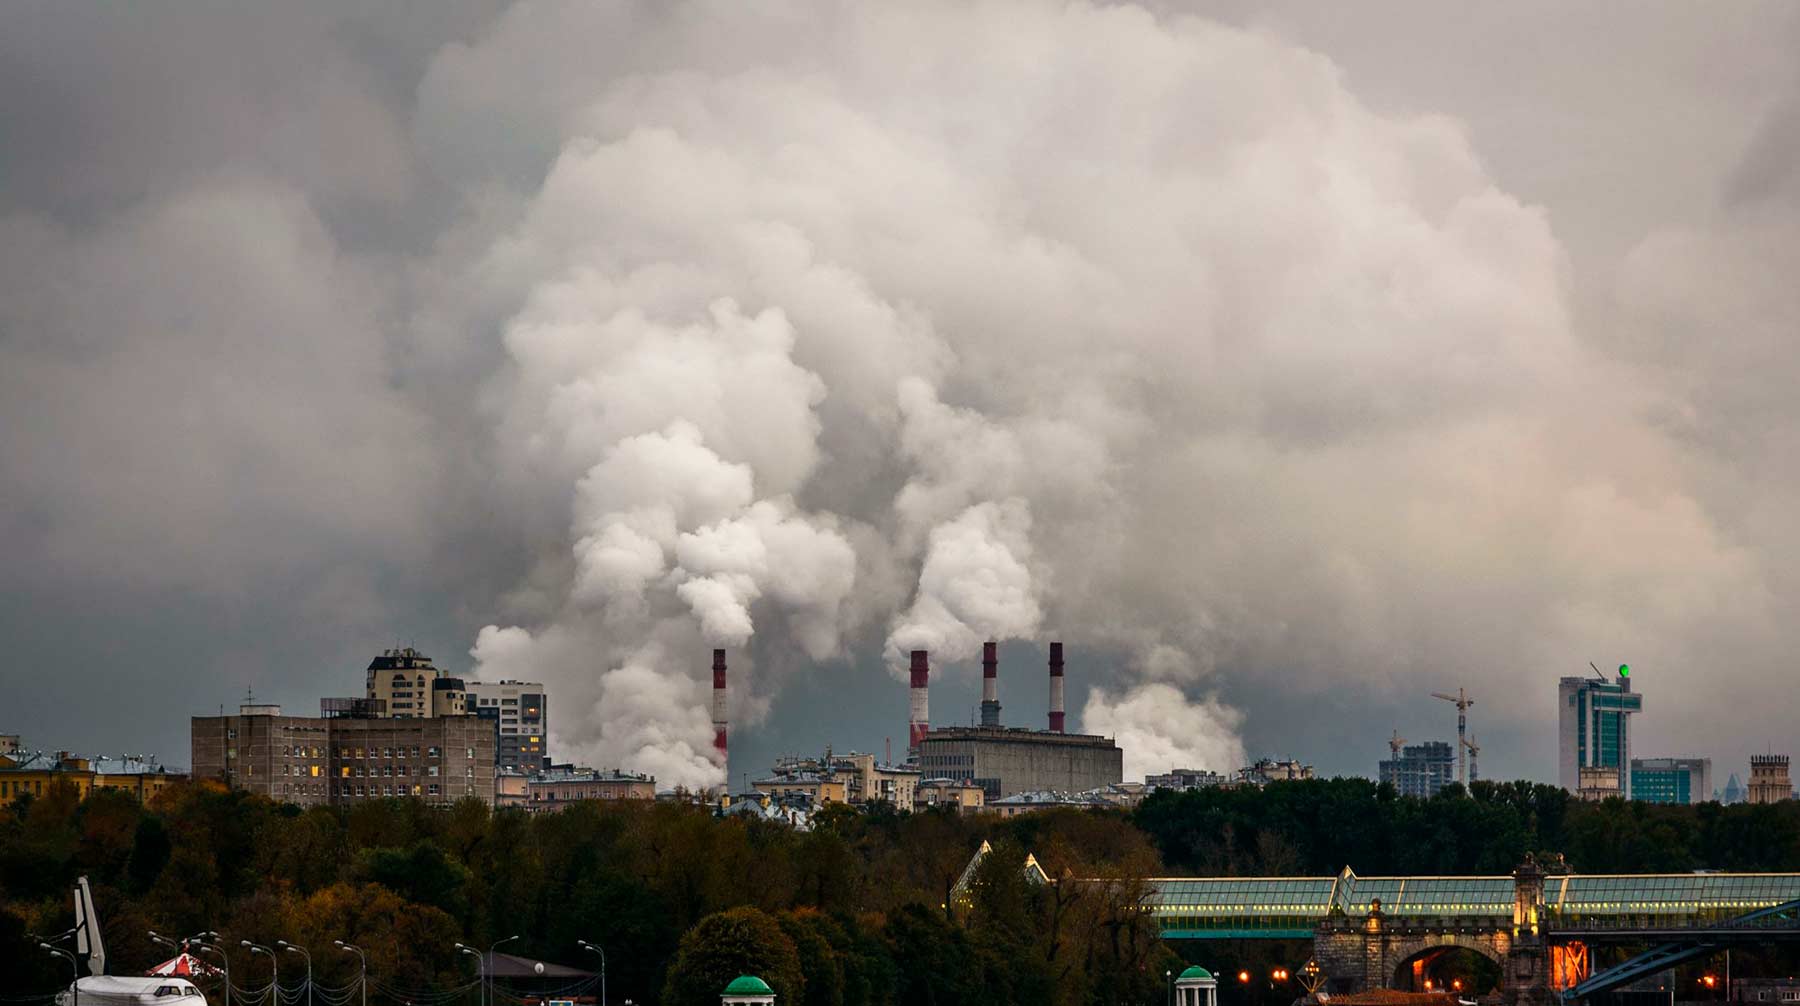 Власти попросили промышленные компании публиковать данные о выбросах вредных веществ Фото: © Global Look Press / Сергей Смирнов